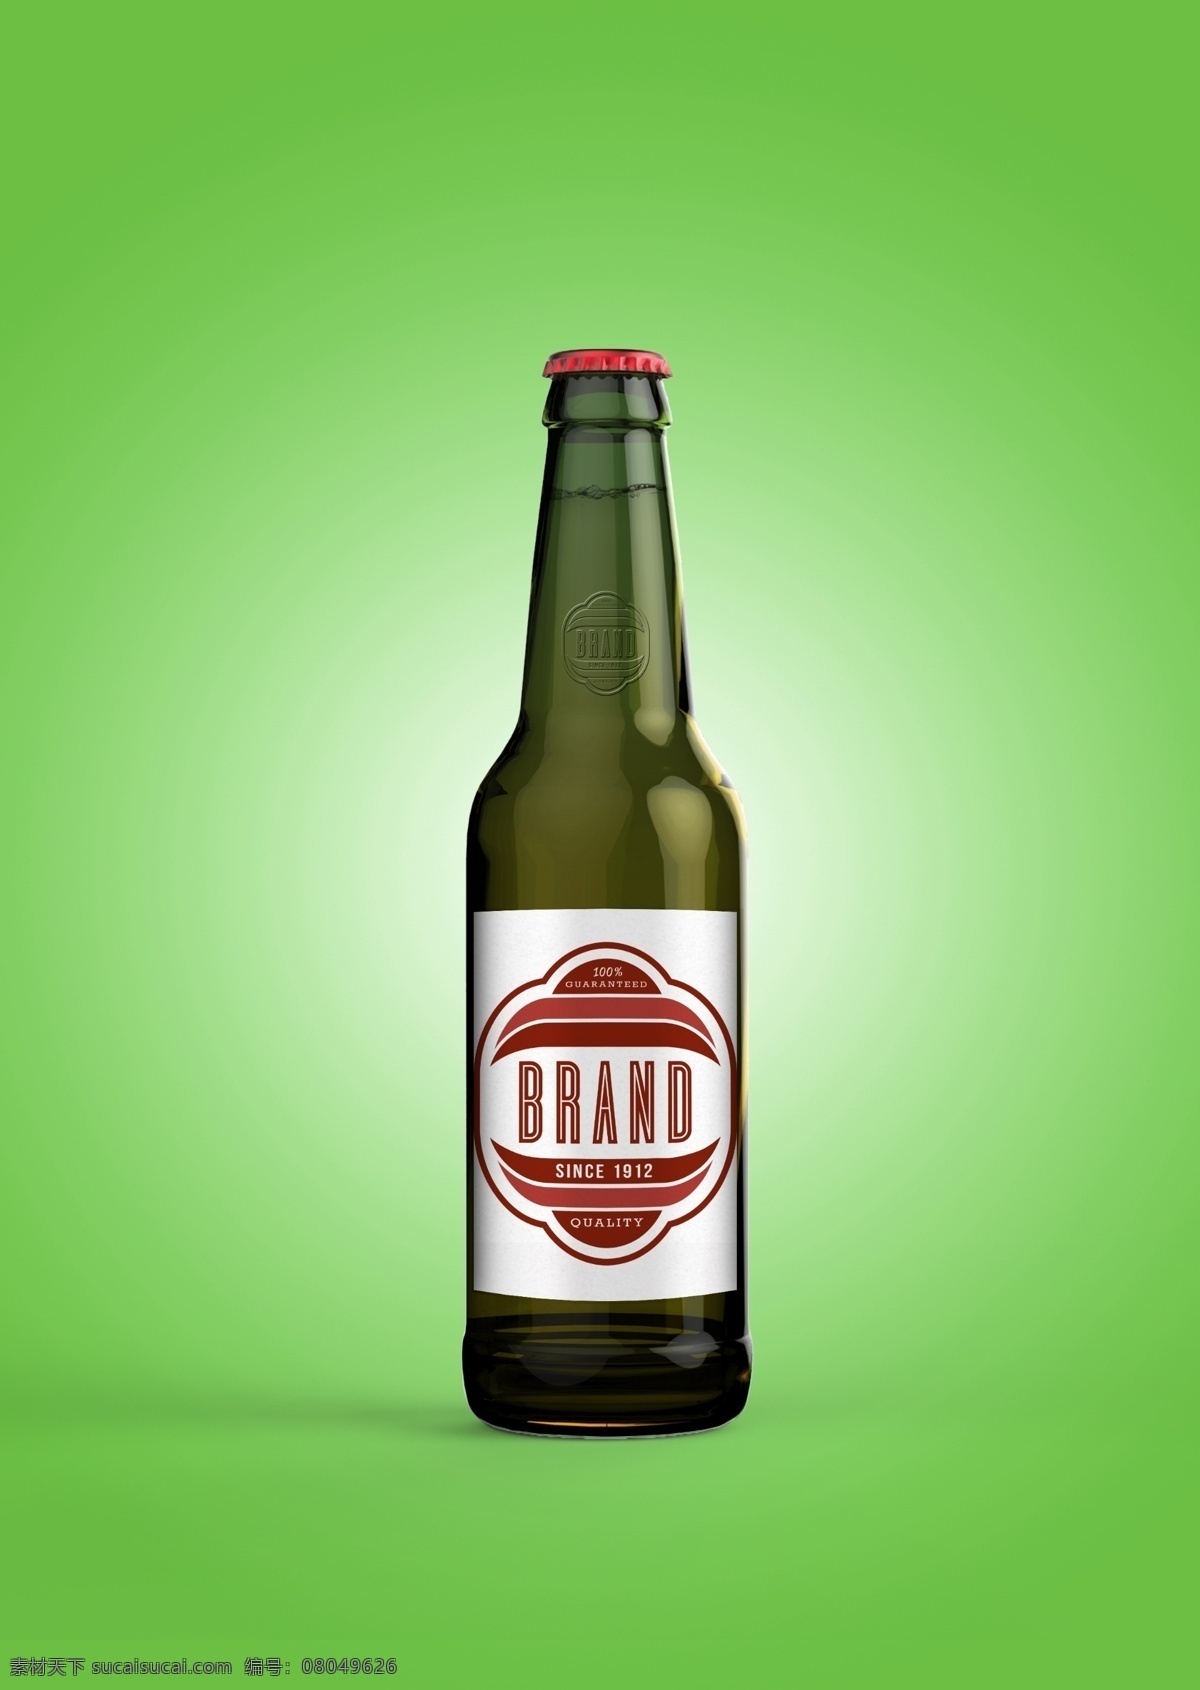 啤酒瓶样机 啤酒瓶 样机 时尚 酒瓶 绿色